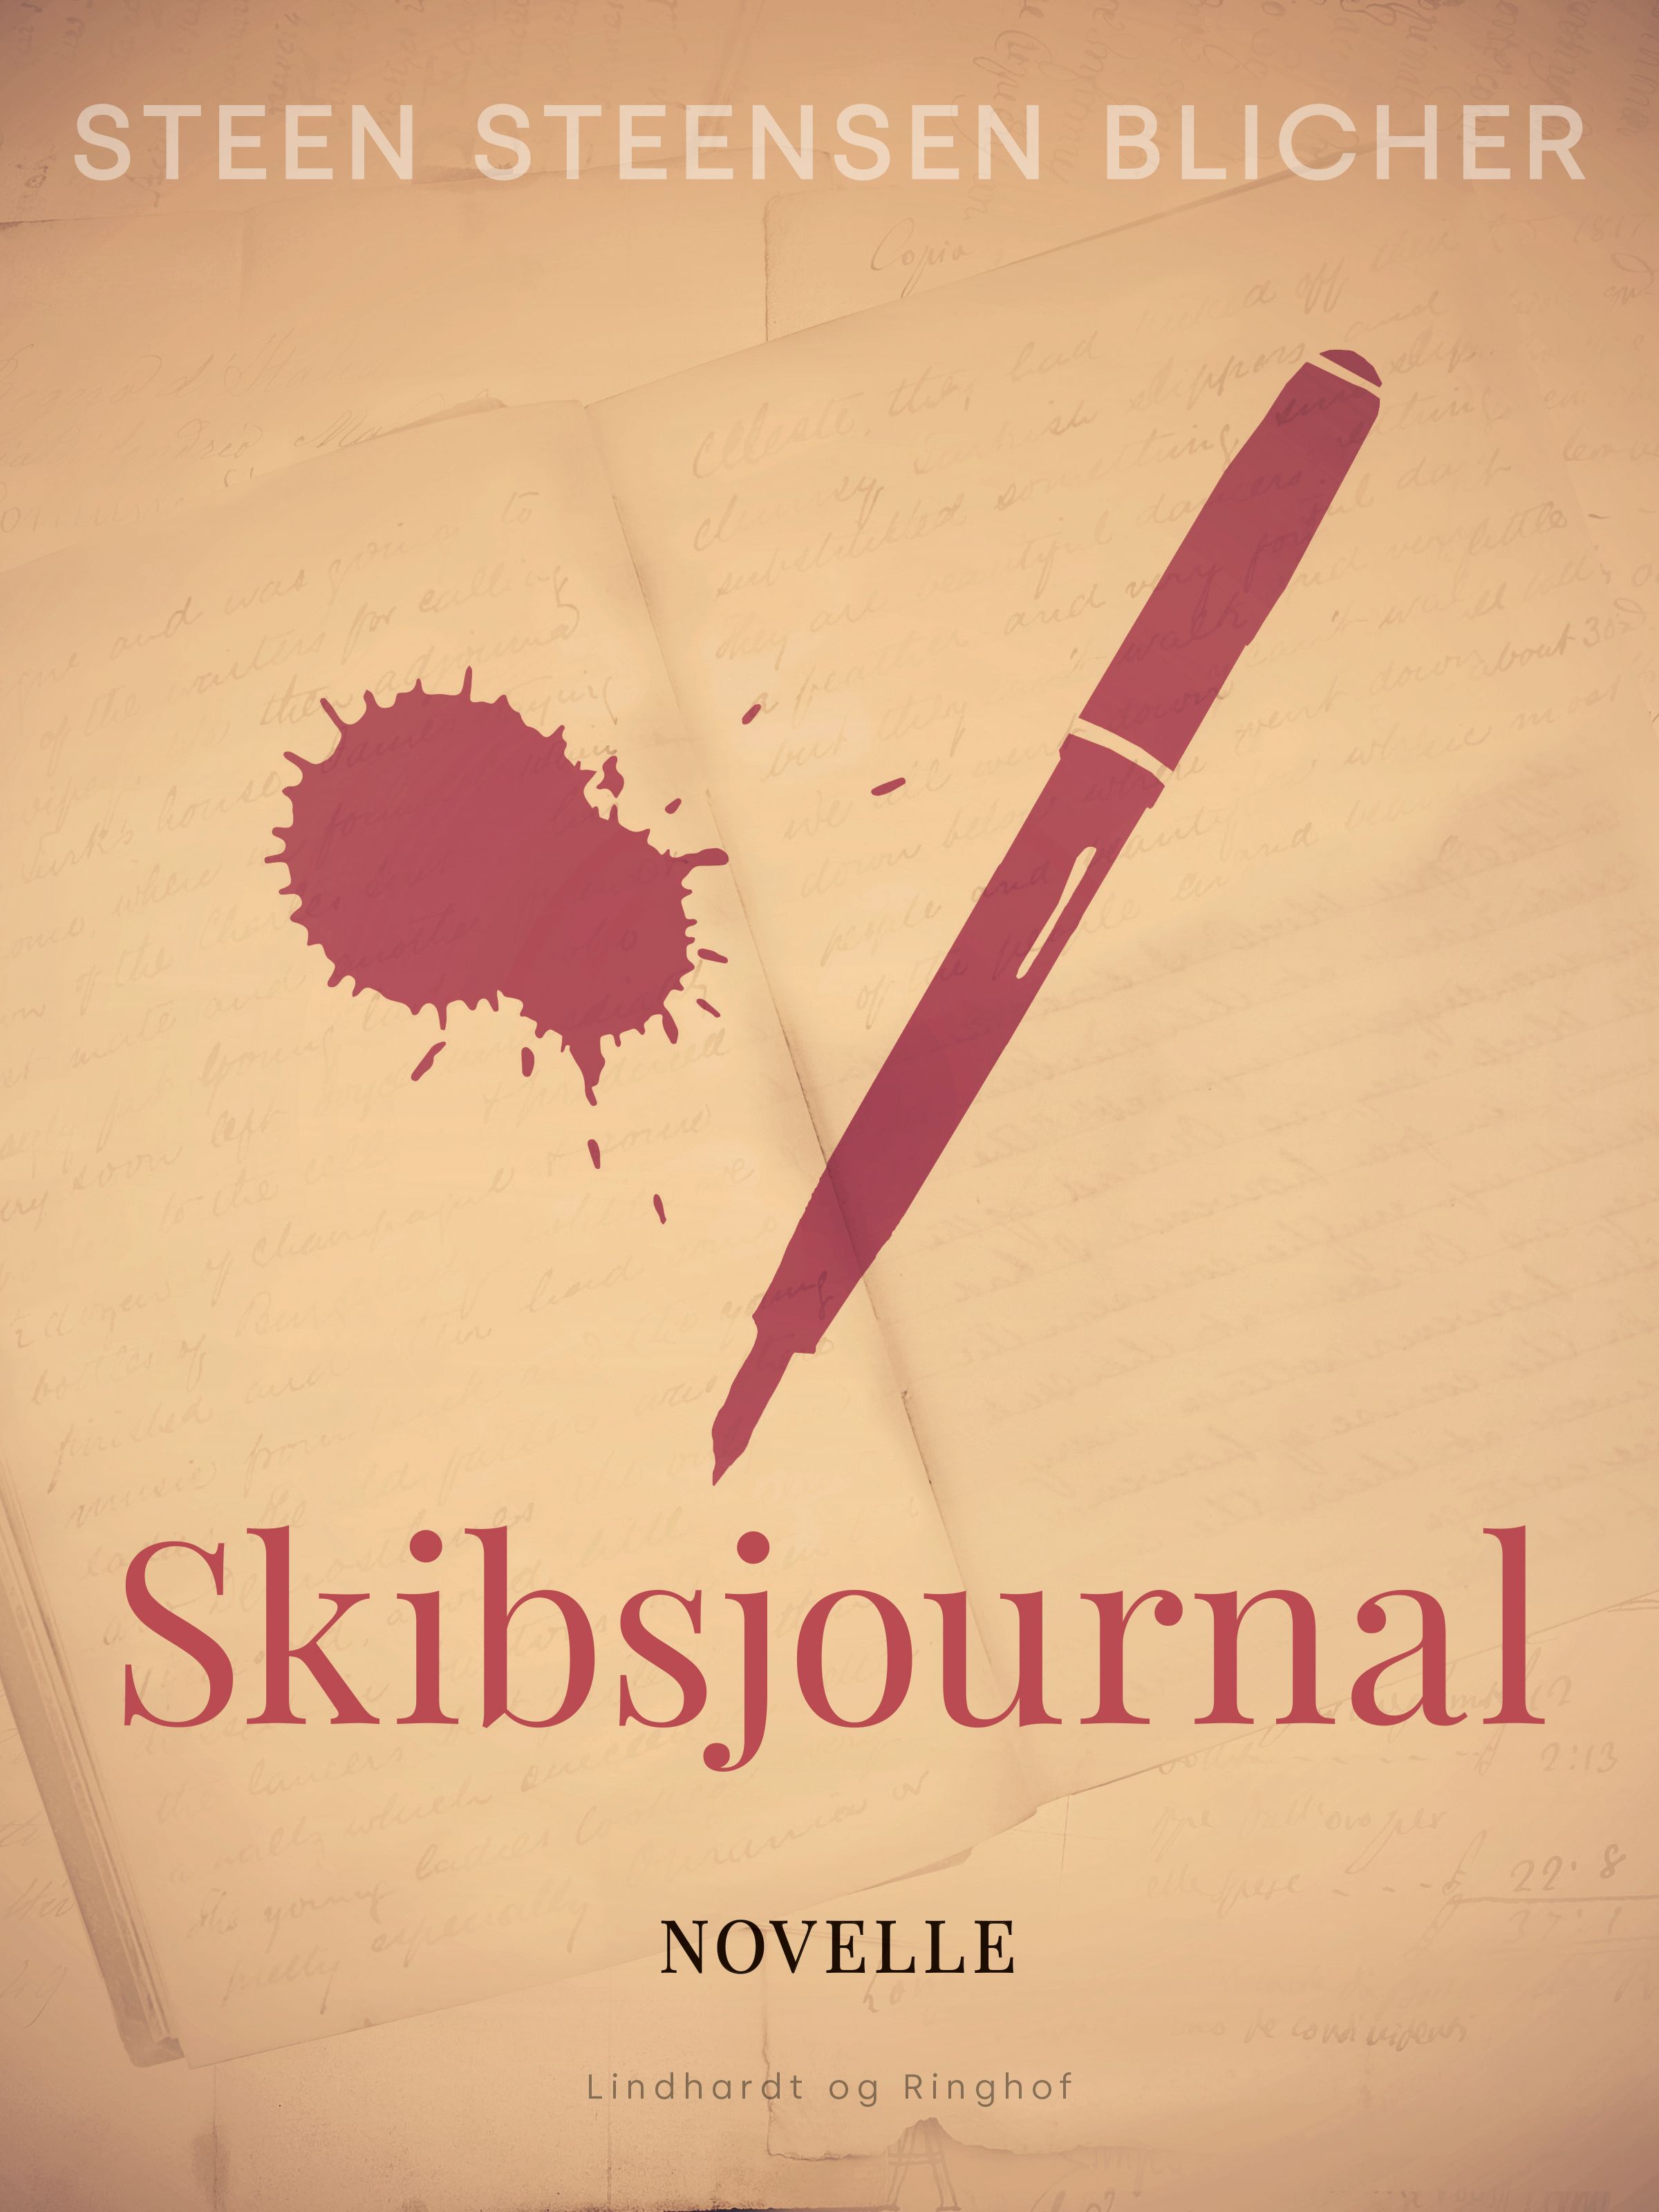 Skibsjournal, e-bog af Steen Steensen Blicher